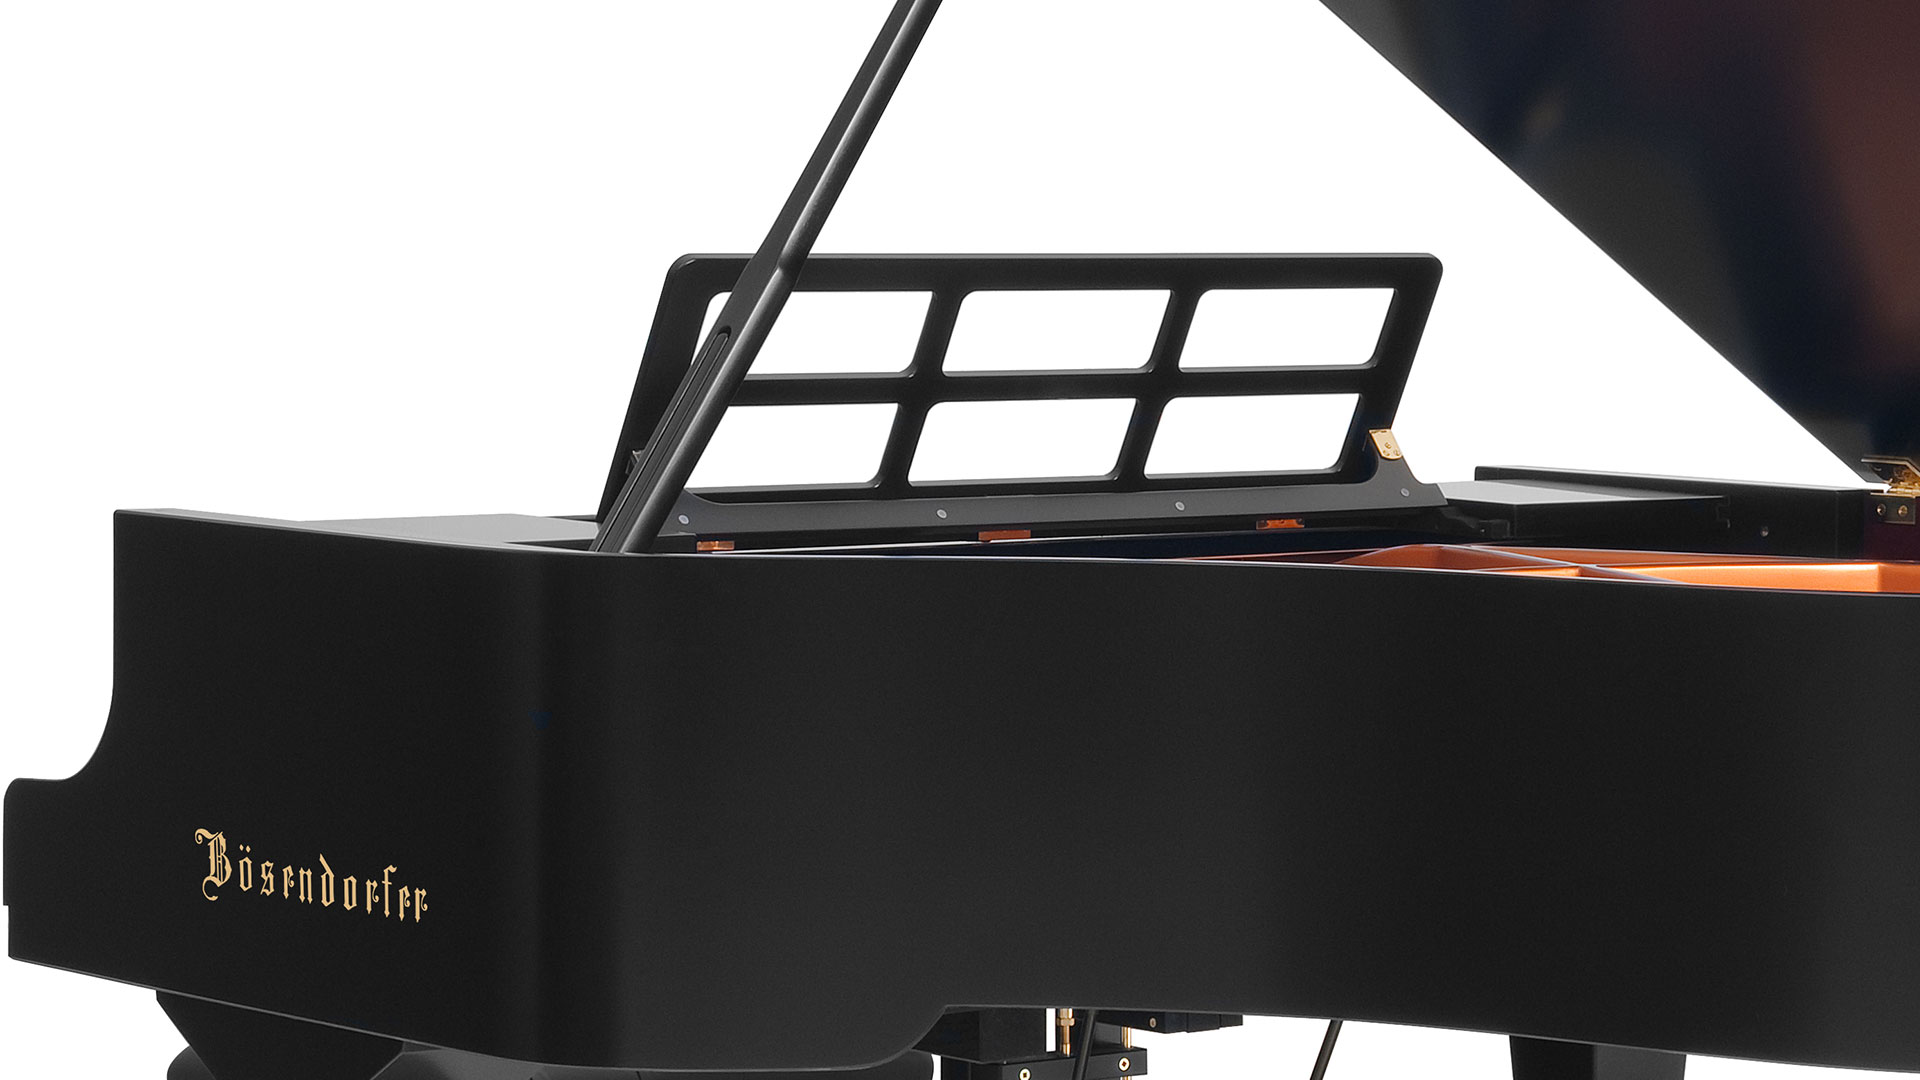 Bosendorfer piano Model 200-cs grand piano